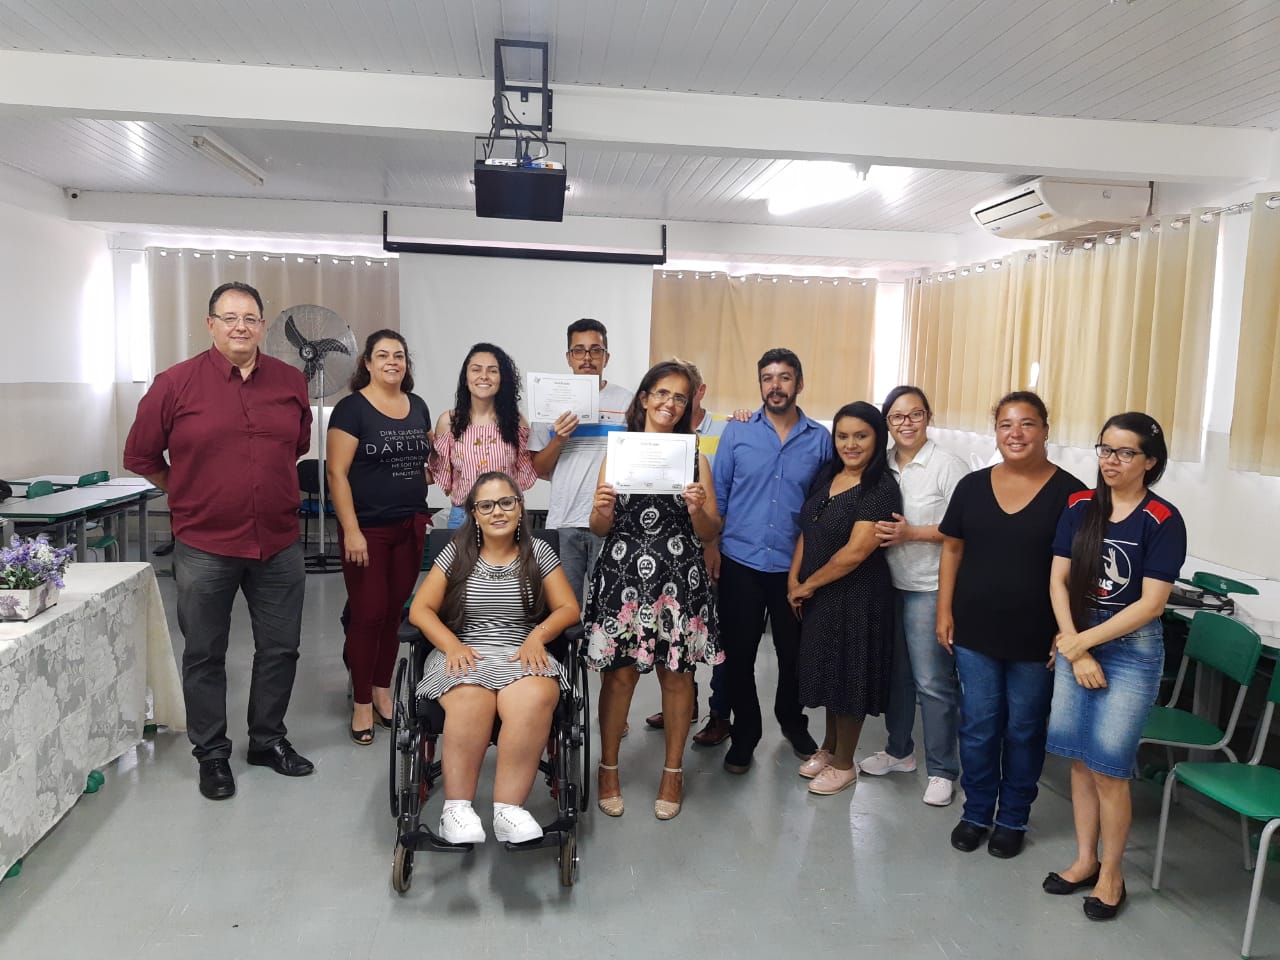 Inédito: Prefeitura de Itararé (SP) realiza curso de capacitação profissional para pessoas com deficiência